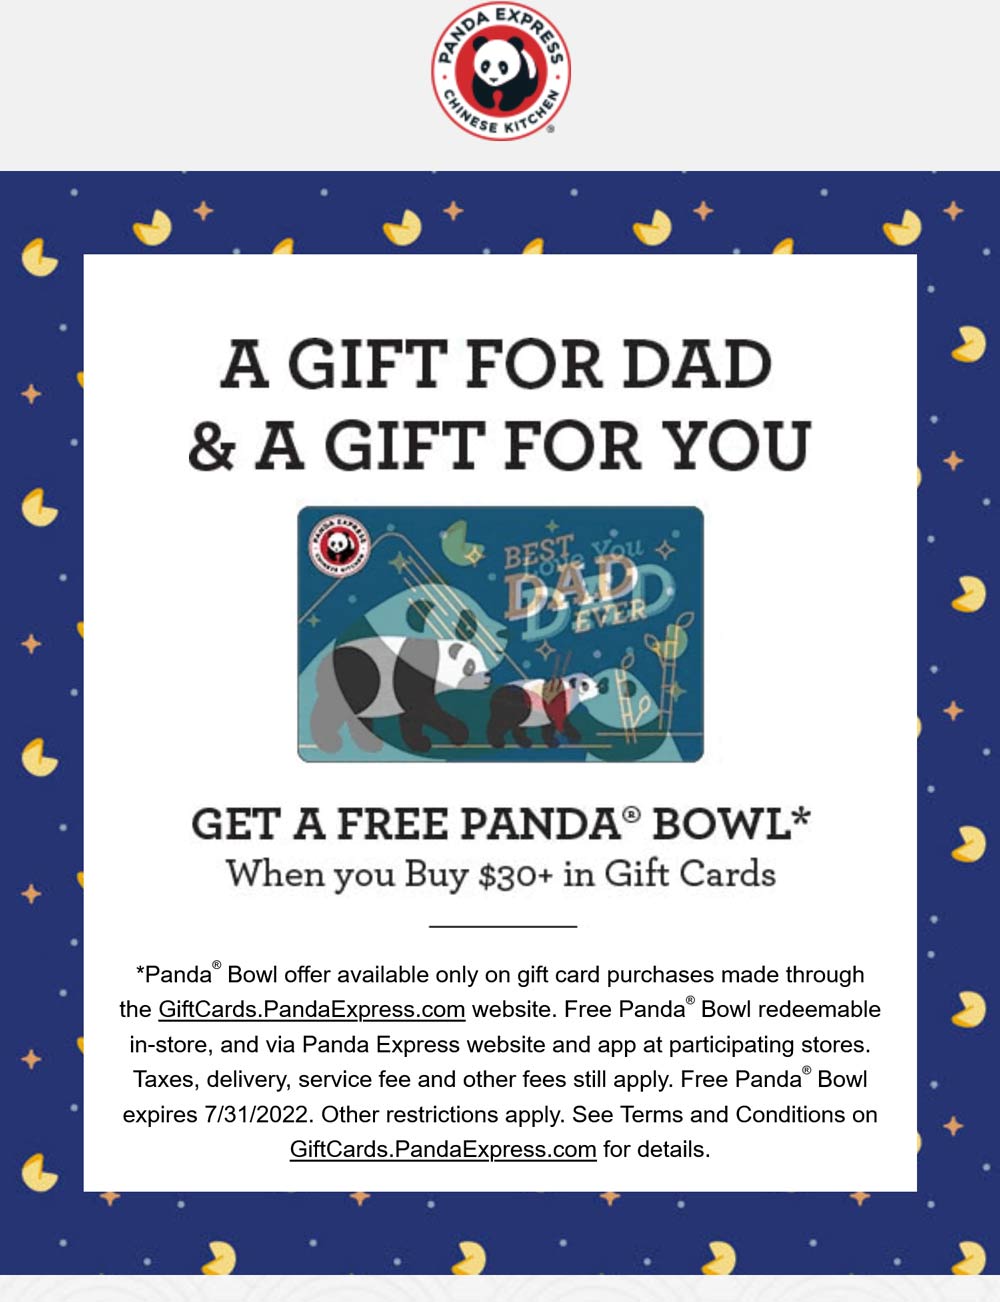 Panda Express restaurants Coupon  Free bowl with $30 gift card purchase at Panda Express restaurants #pandaexpress 